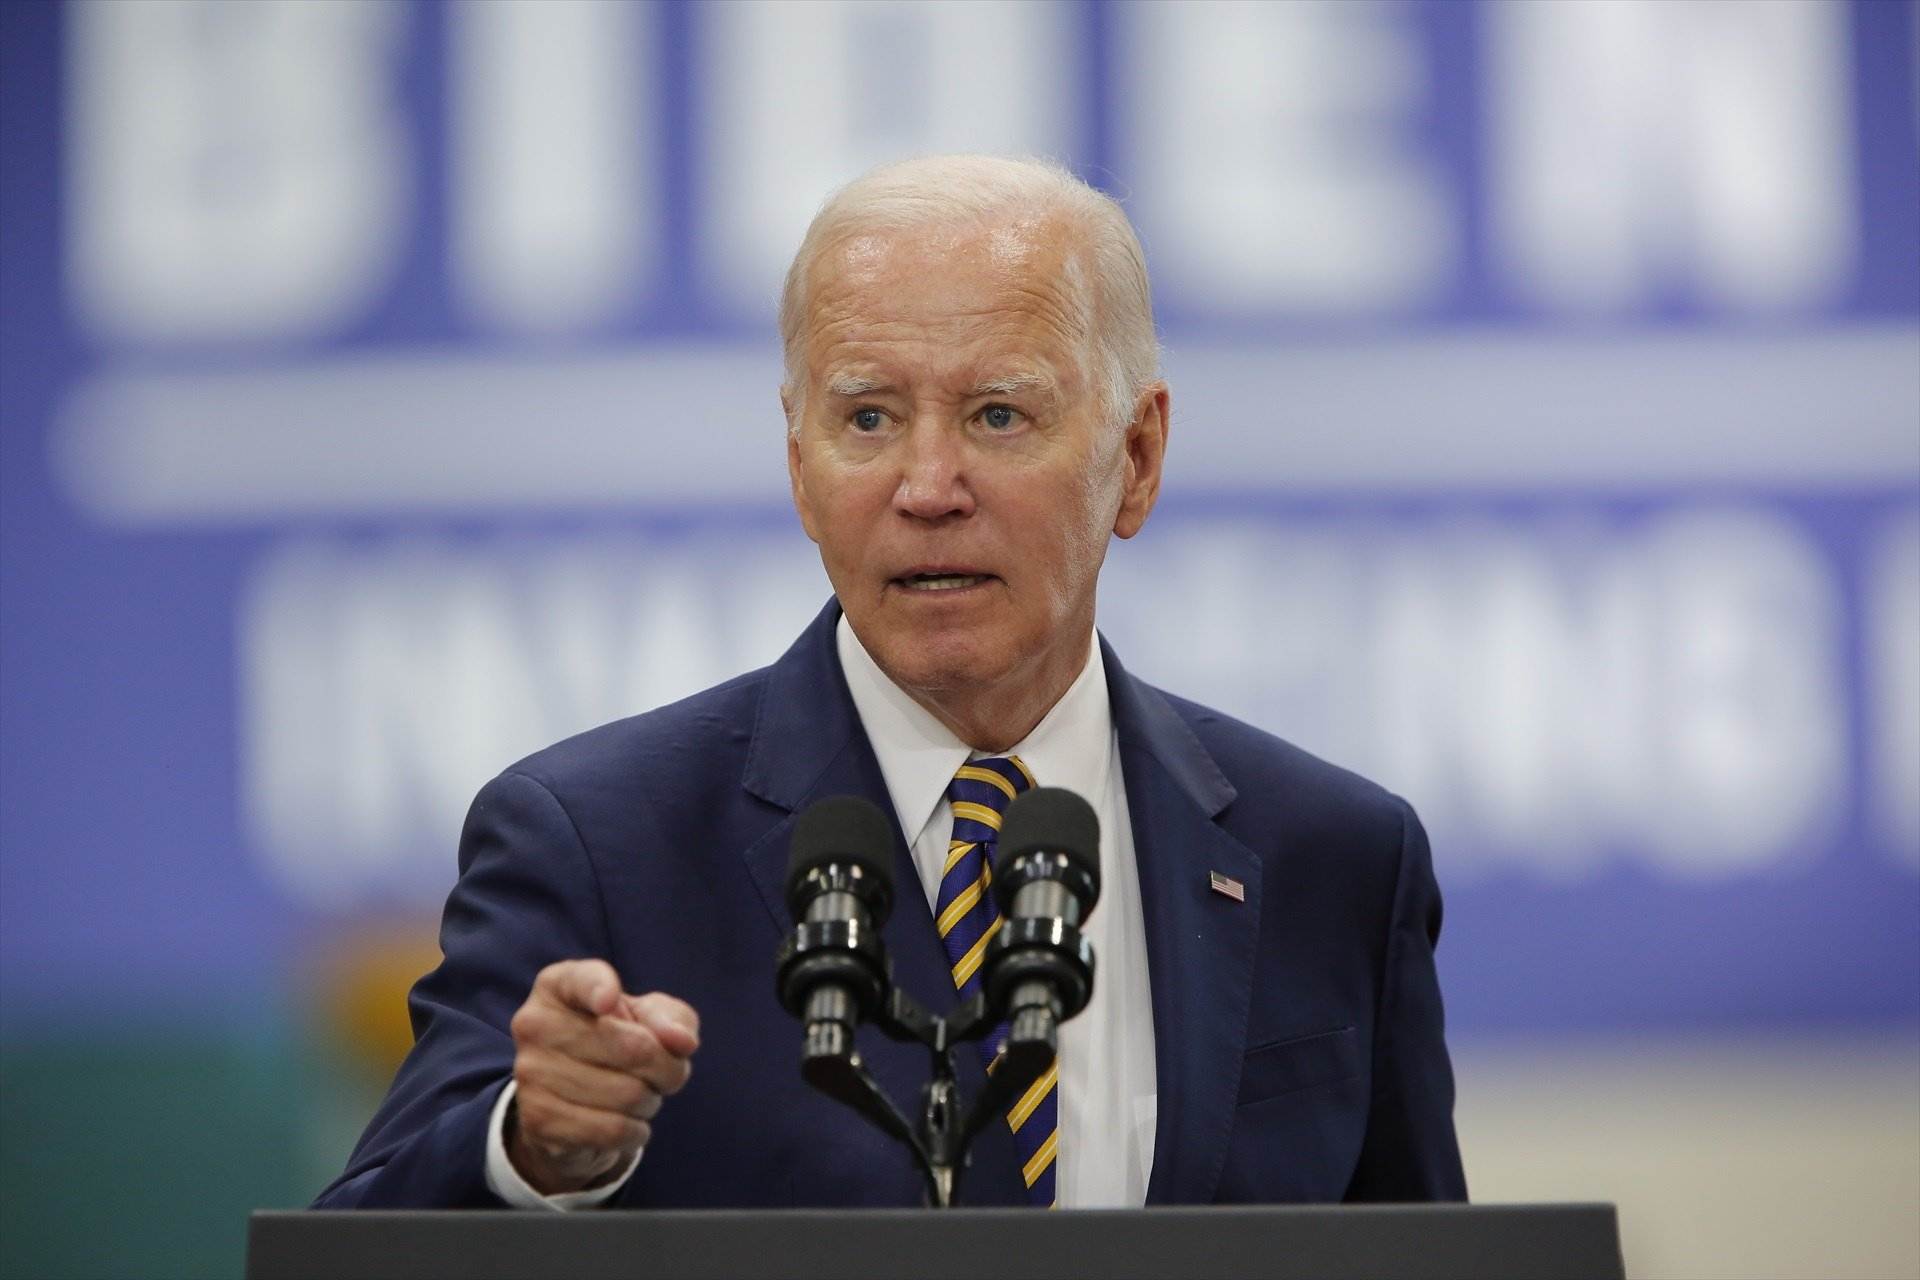 Joe Biden expresa el apoyo sin fisuras de EE.UU. a Israel: "Tienen derecho a defenderse"